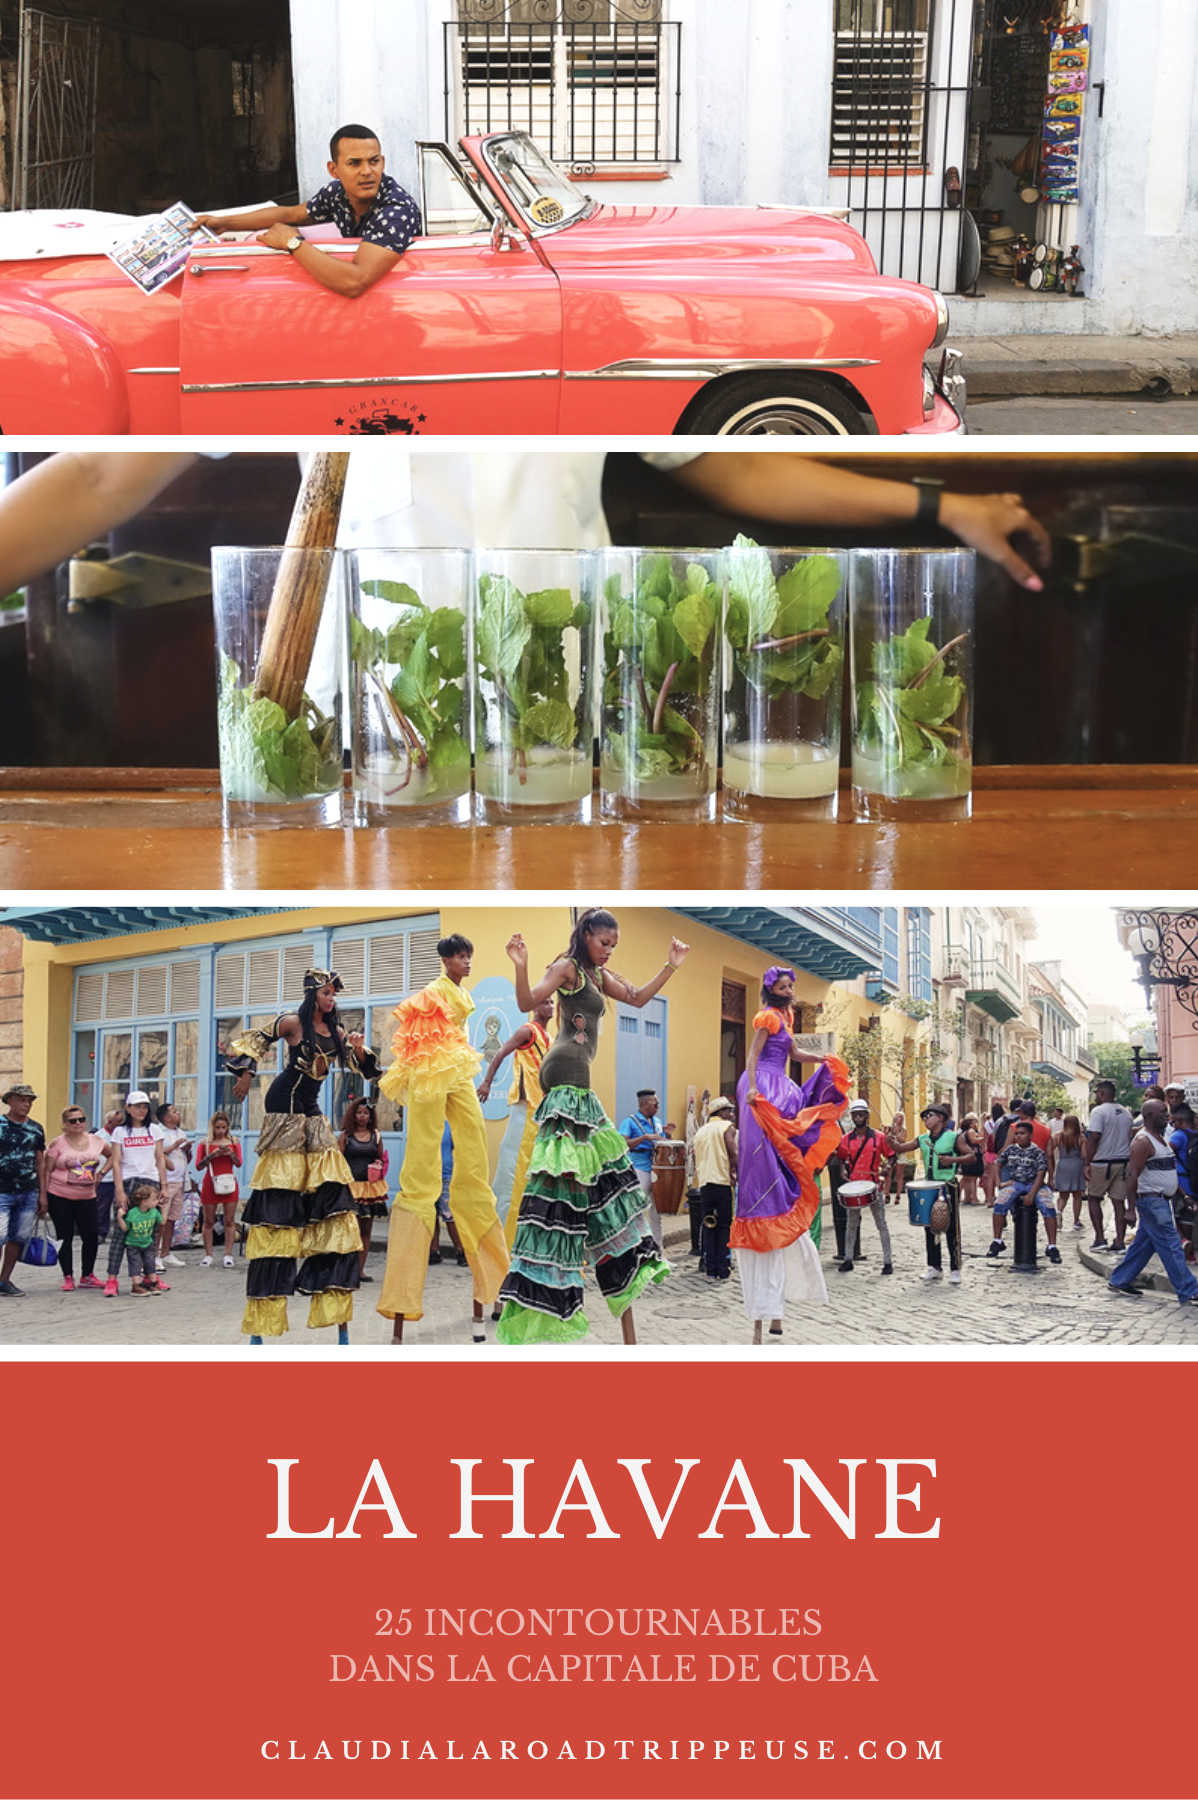 La Havane canva pour Pinterest